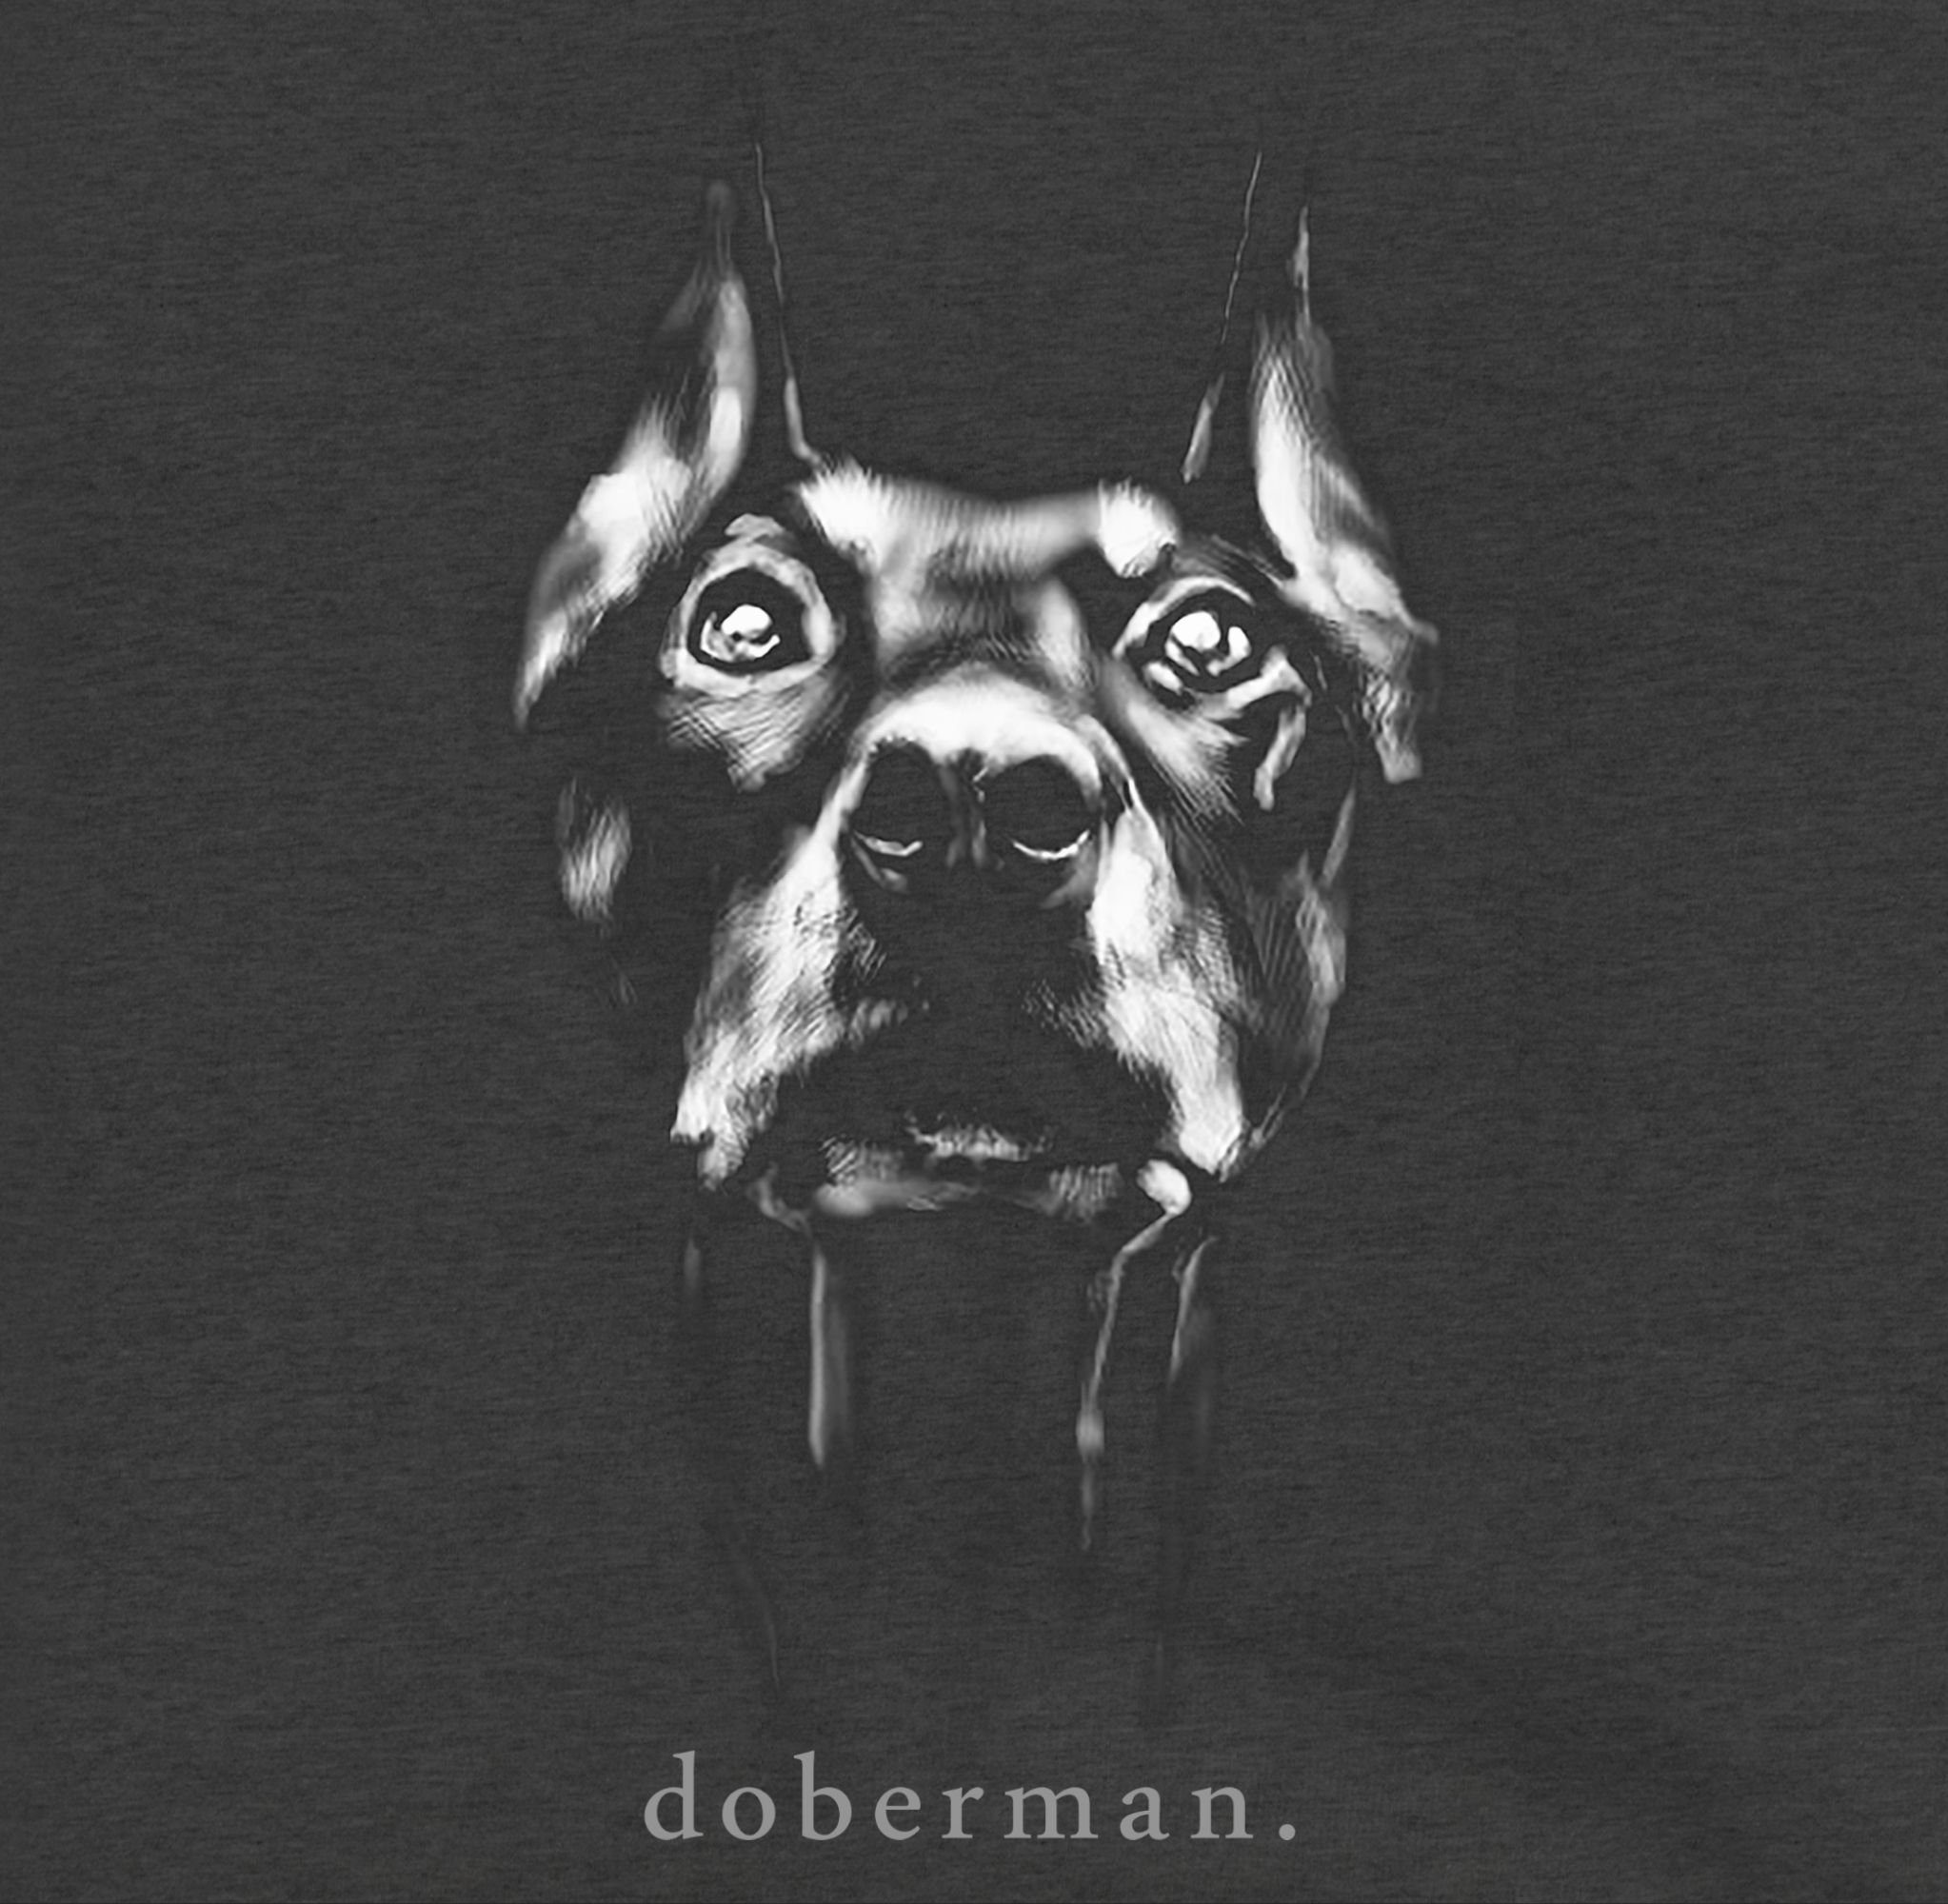 Herren Pullover Shirtracer Hoodie Doberman - Geschenk für Hundebesitzer - Männer Premium Kapuzenpullover Hund Hundeliebhaber Hun